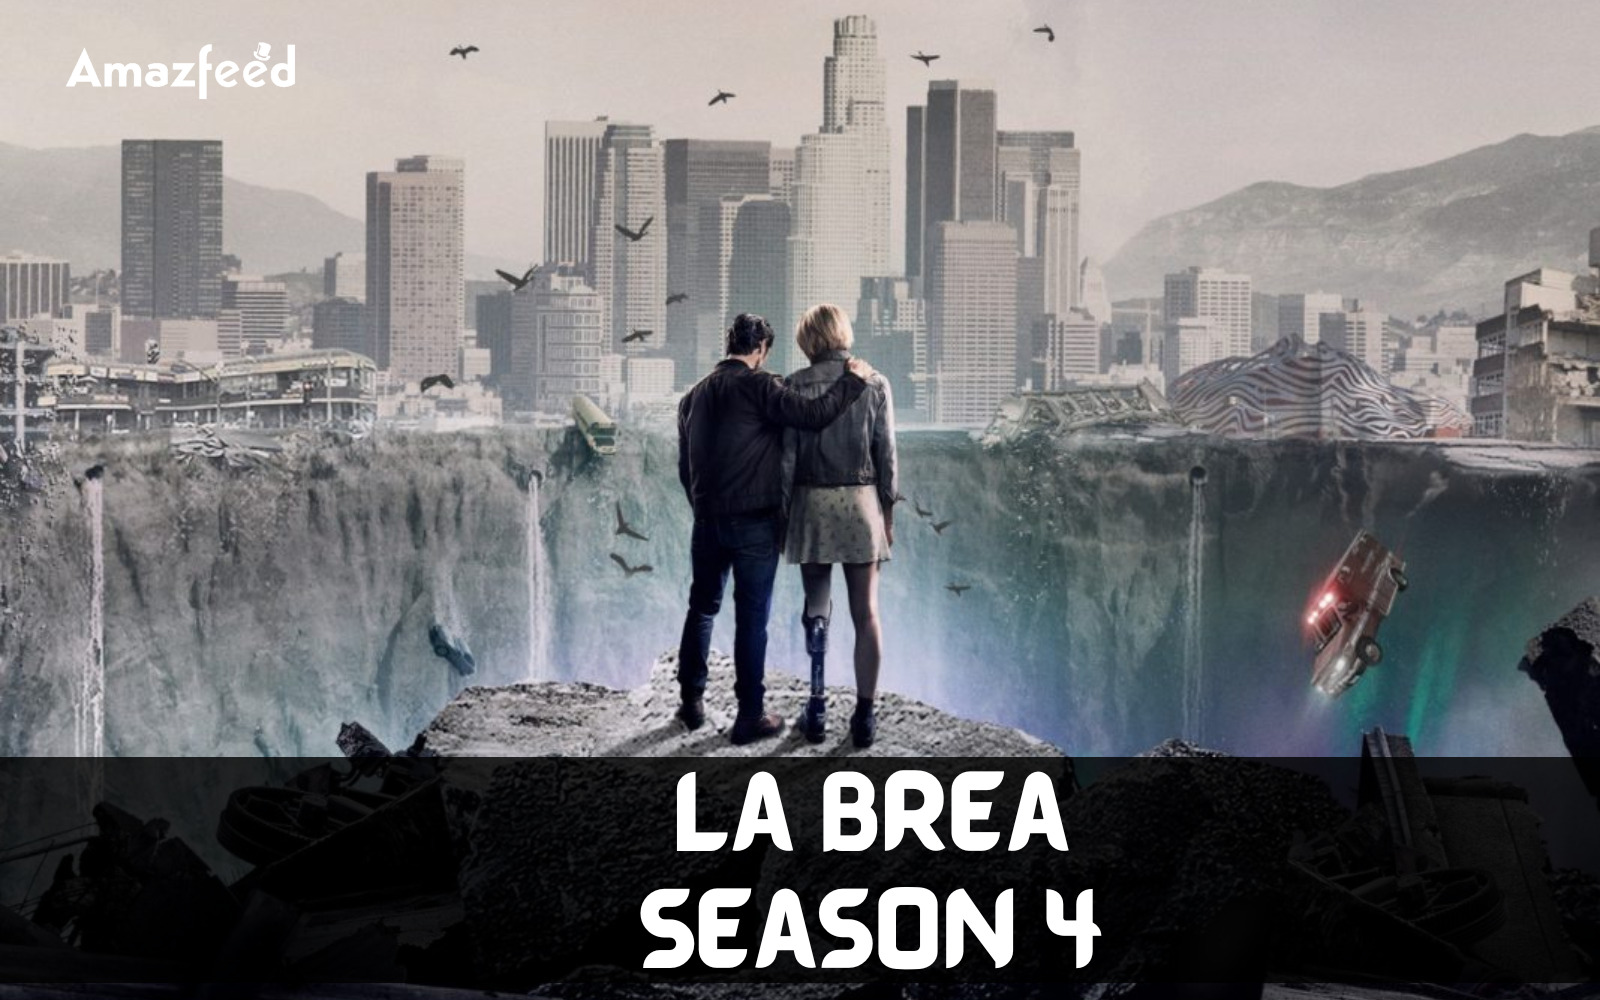 La Brea Season 4 Release Date